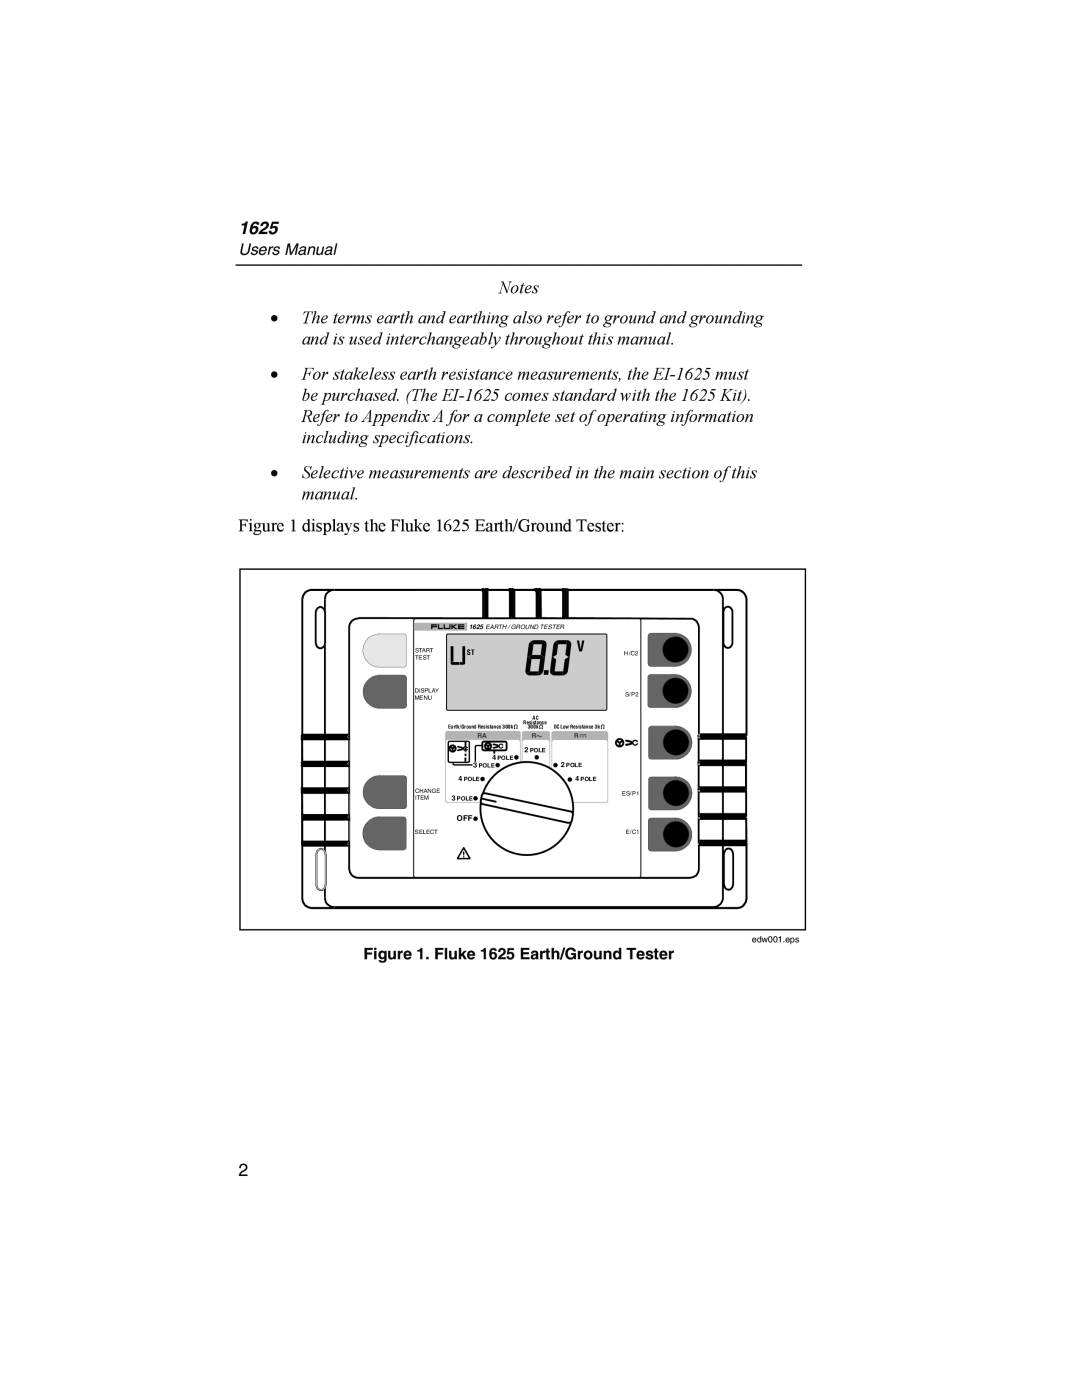 Fluke user manual displays the Fluke 1625 Earth/Ground Tester 